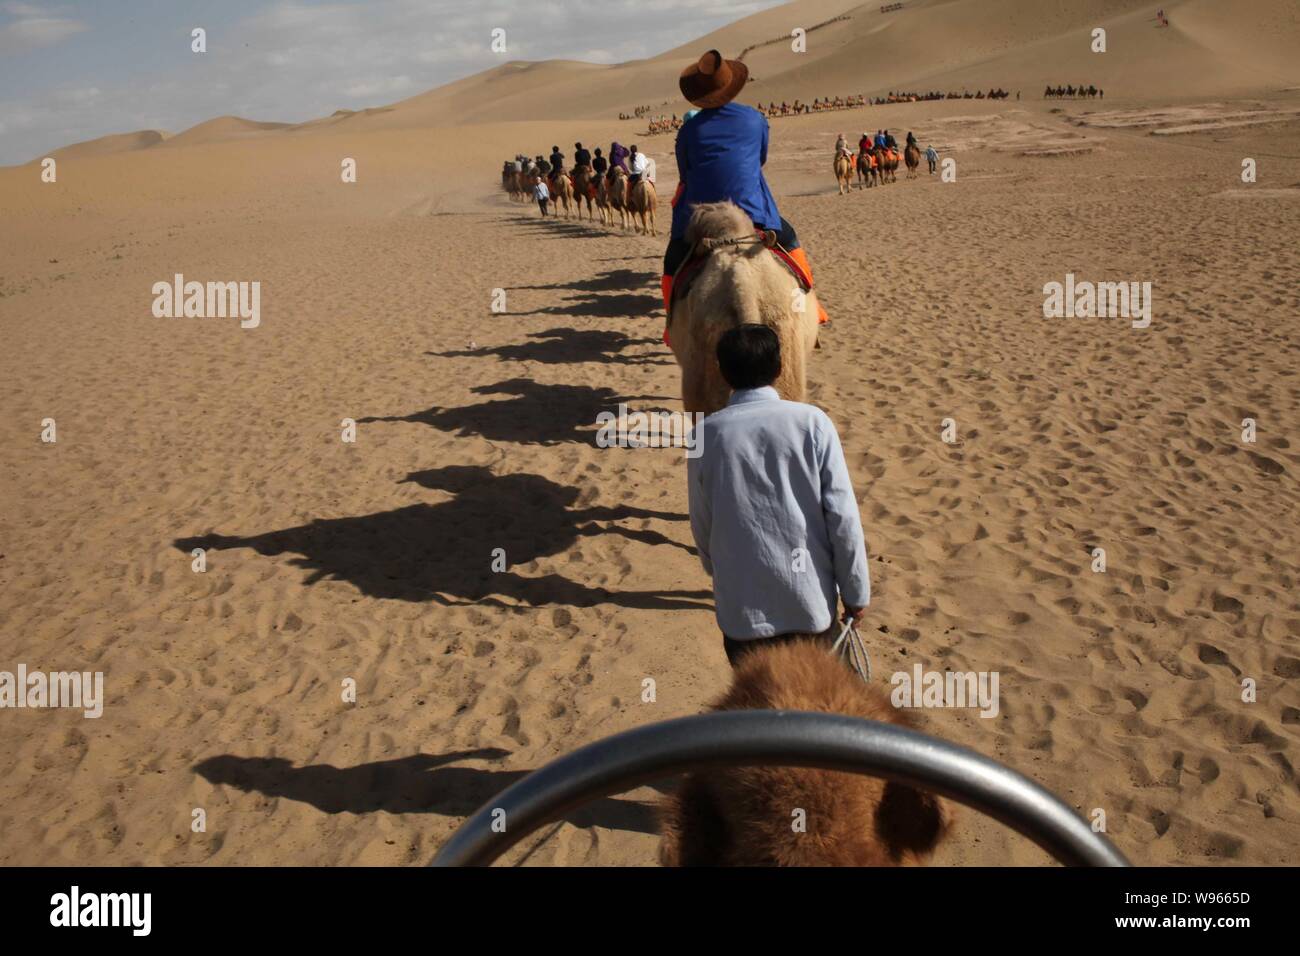 Les touristes monter des chameaux dans le désert dans le Croissant de lune (Yueyaquan) et le chant des montagnes de sable dans endroit pittoresque, au nord-ouest de la ville de Dunhuang Chines Banque D'Images